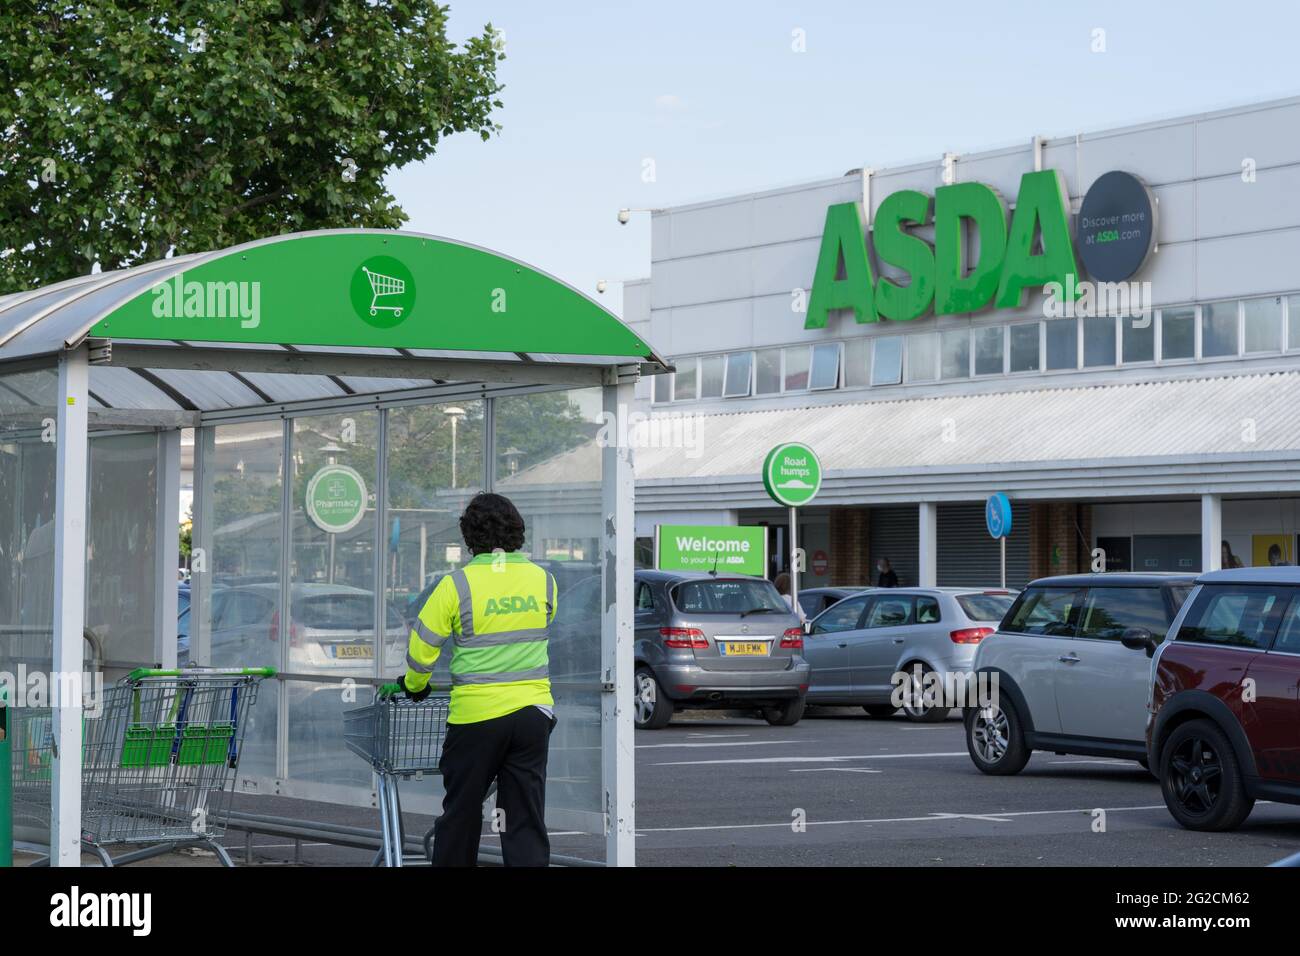 ASDA Shop assistance collecte le chariot vide du parc à chariots au magasin, Londres, Angleterre, Royaume-Uni Banque D'Images